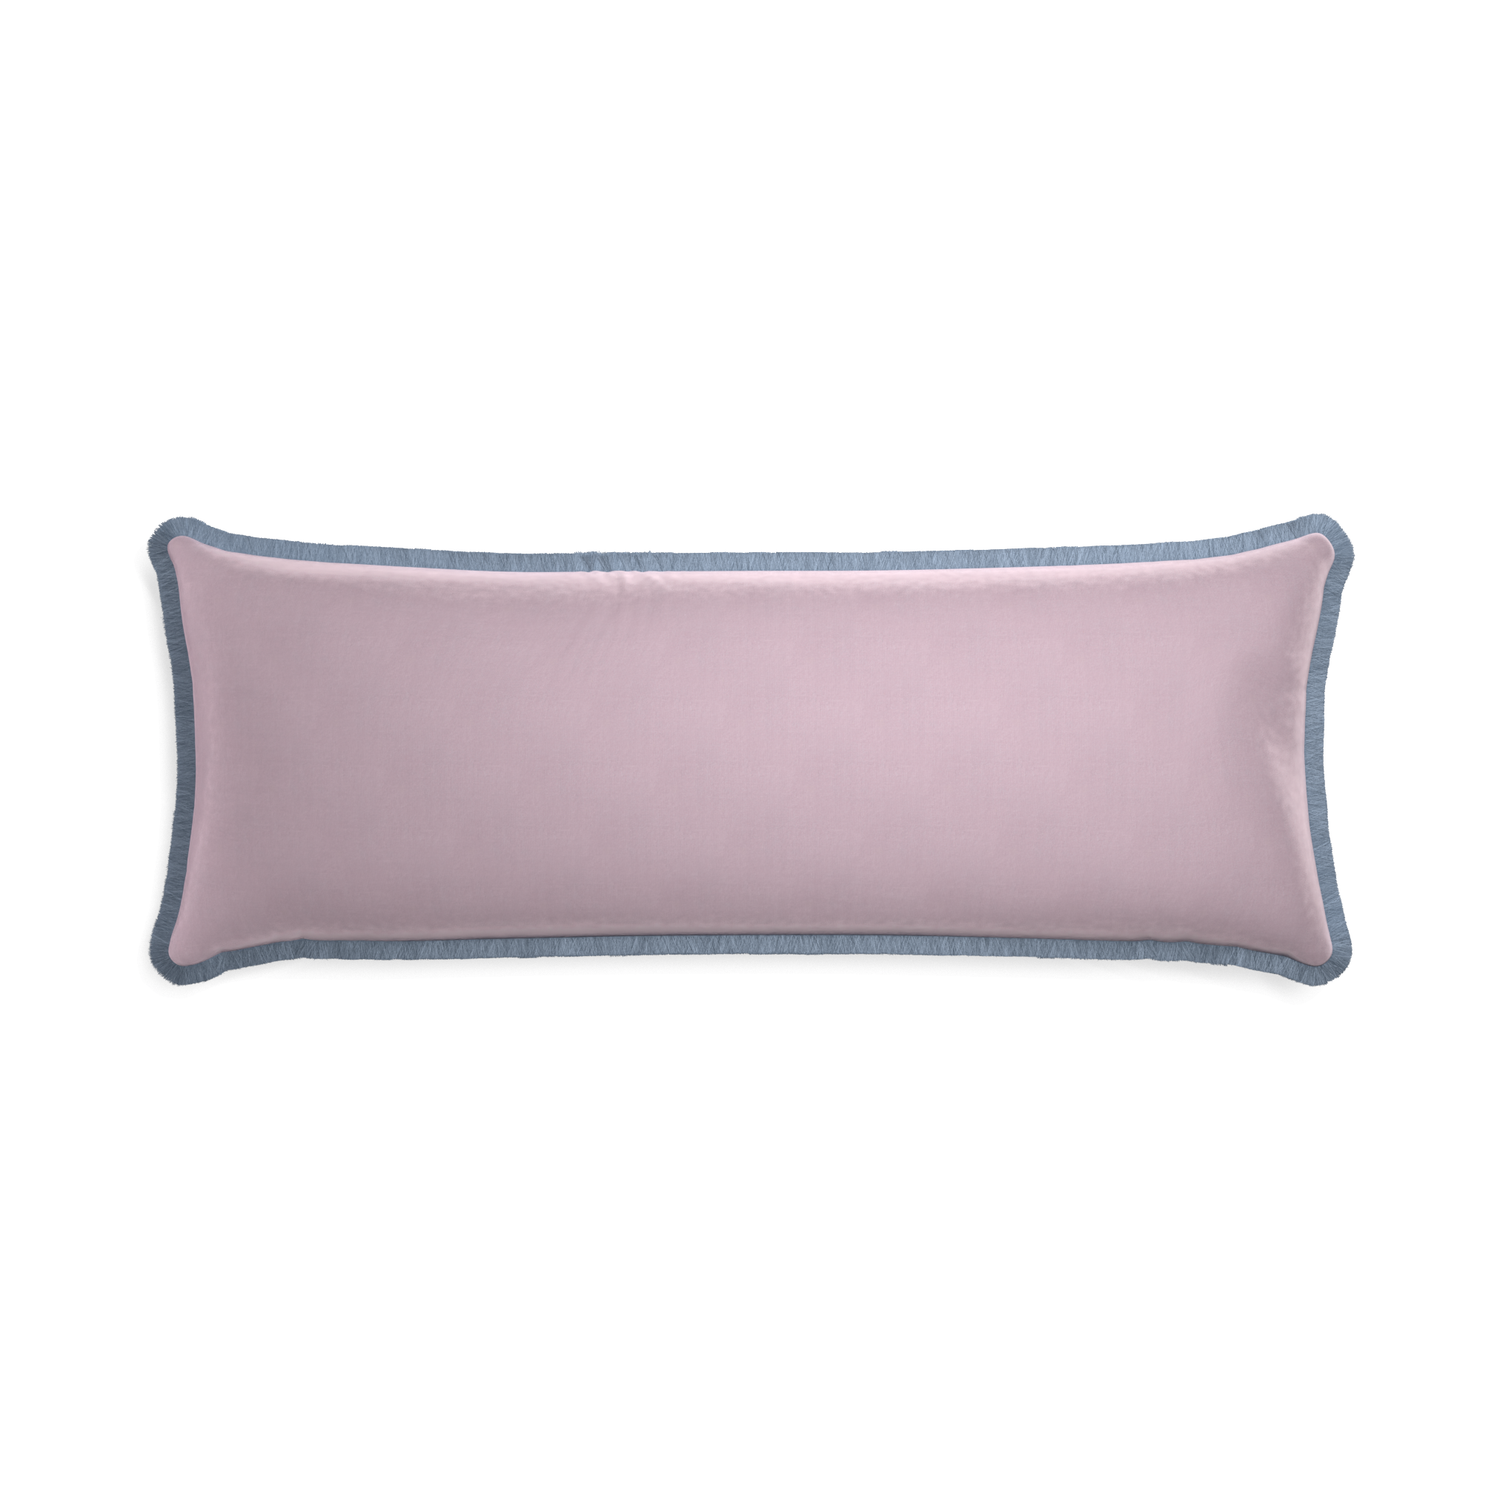 rectangle lilac velvet pillow with sky blue fringe 